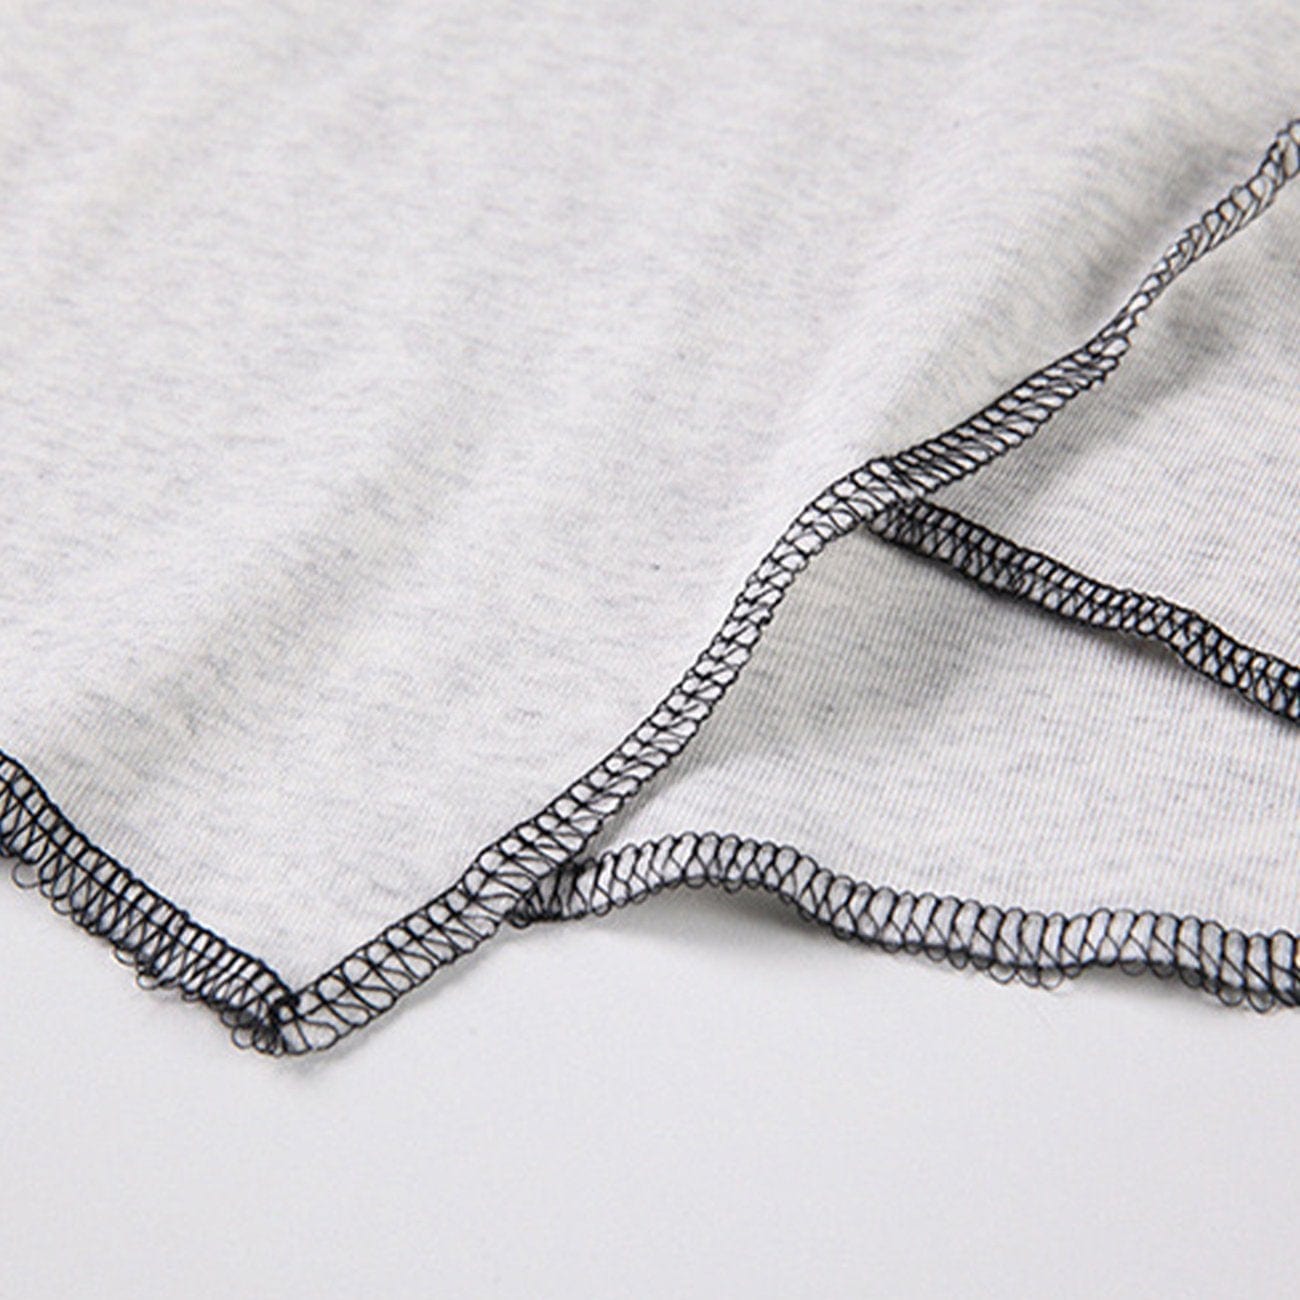 Irregular Open Thread Long Sleeve T Shirt Streetwear Brand Techwear Combat Tactical YUGEN THEORY